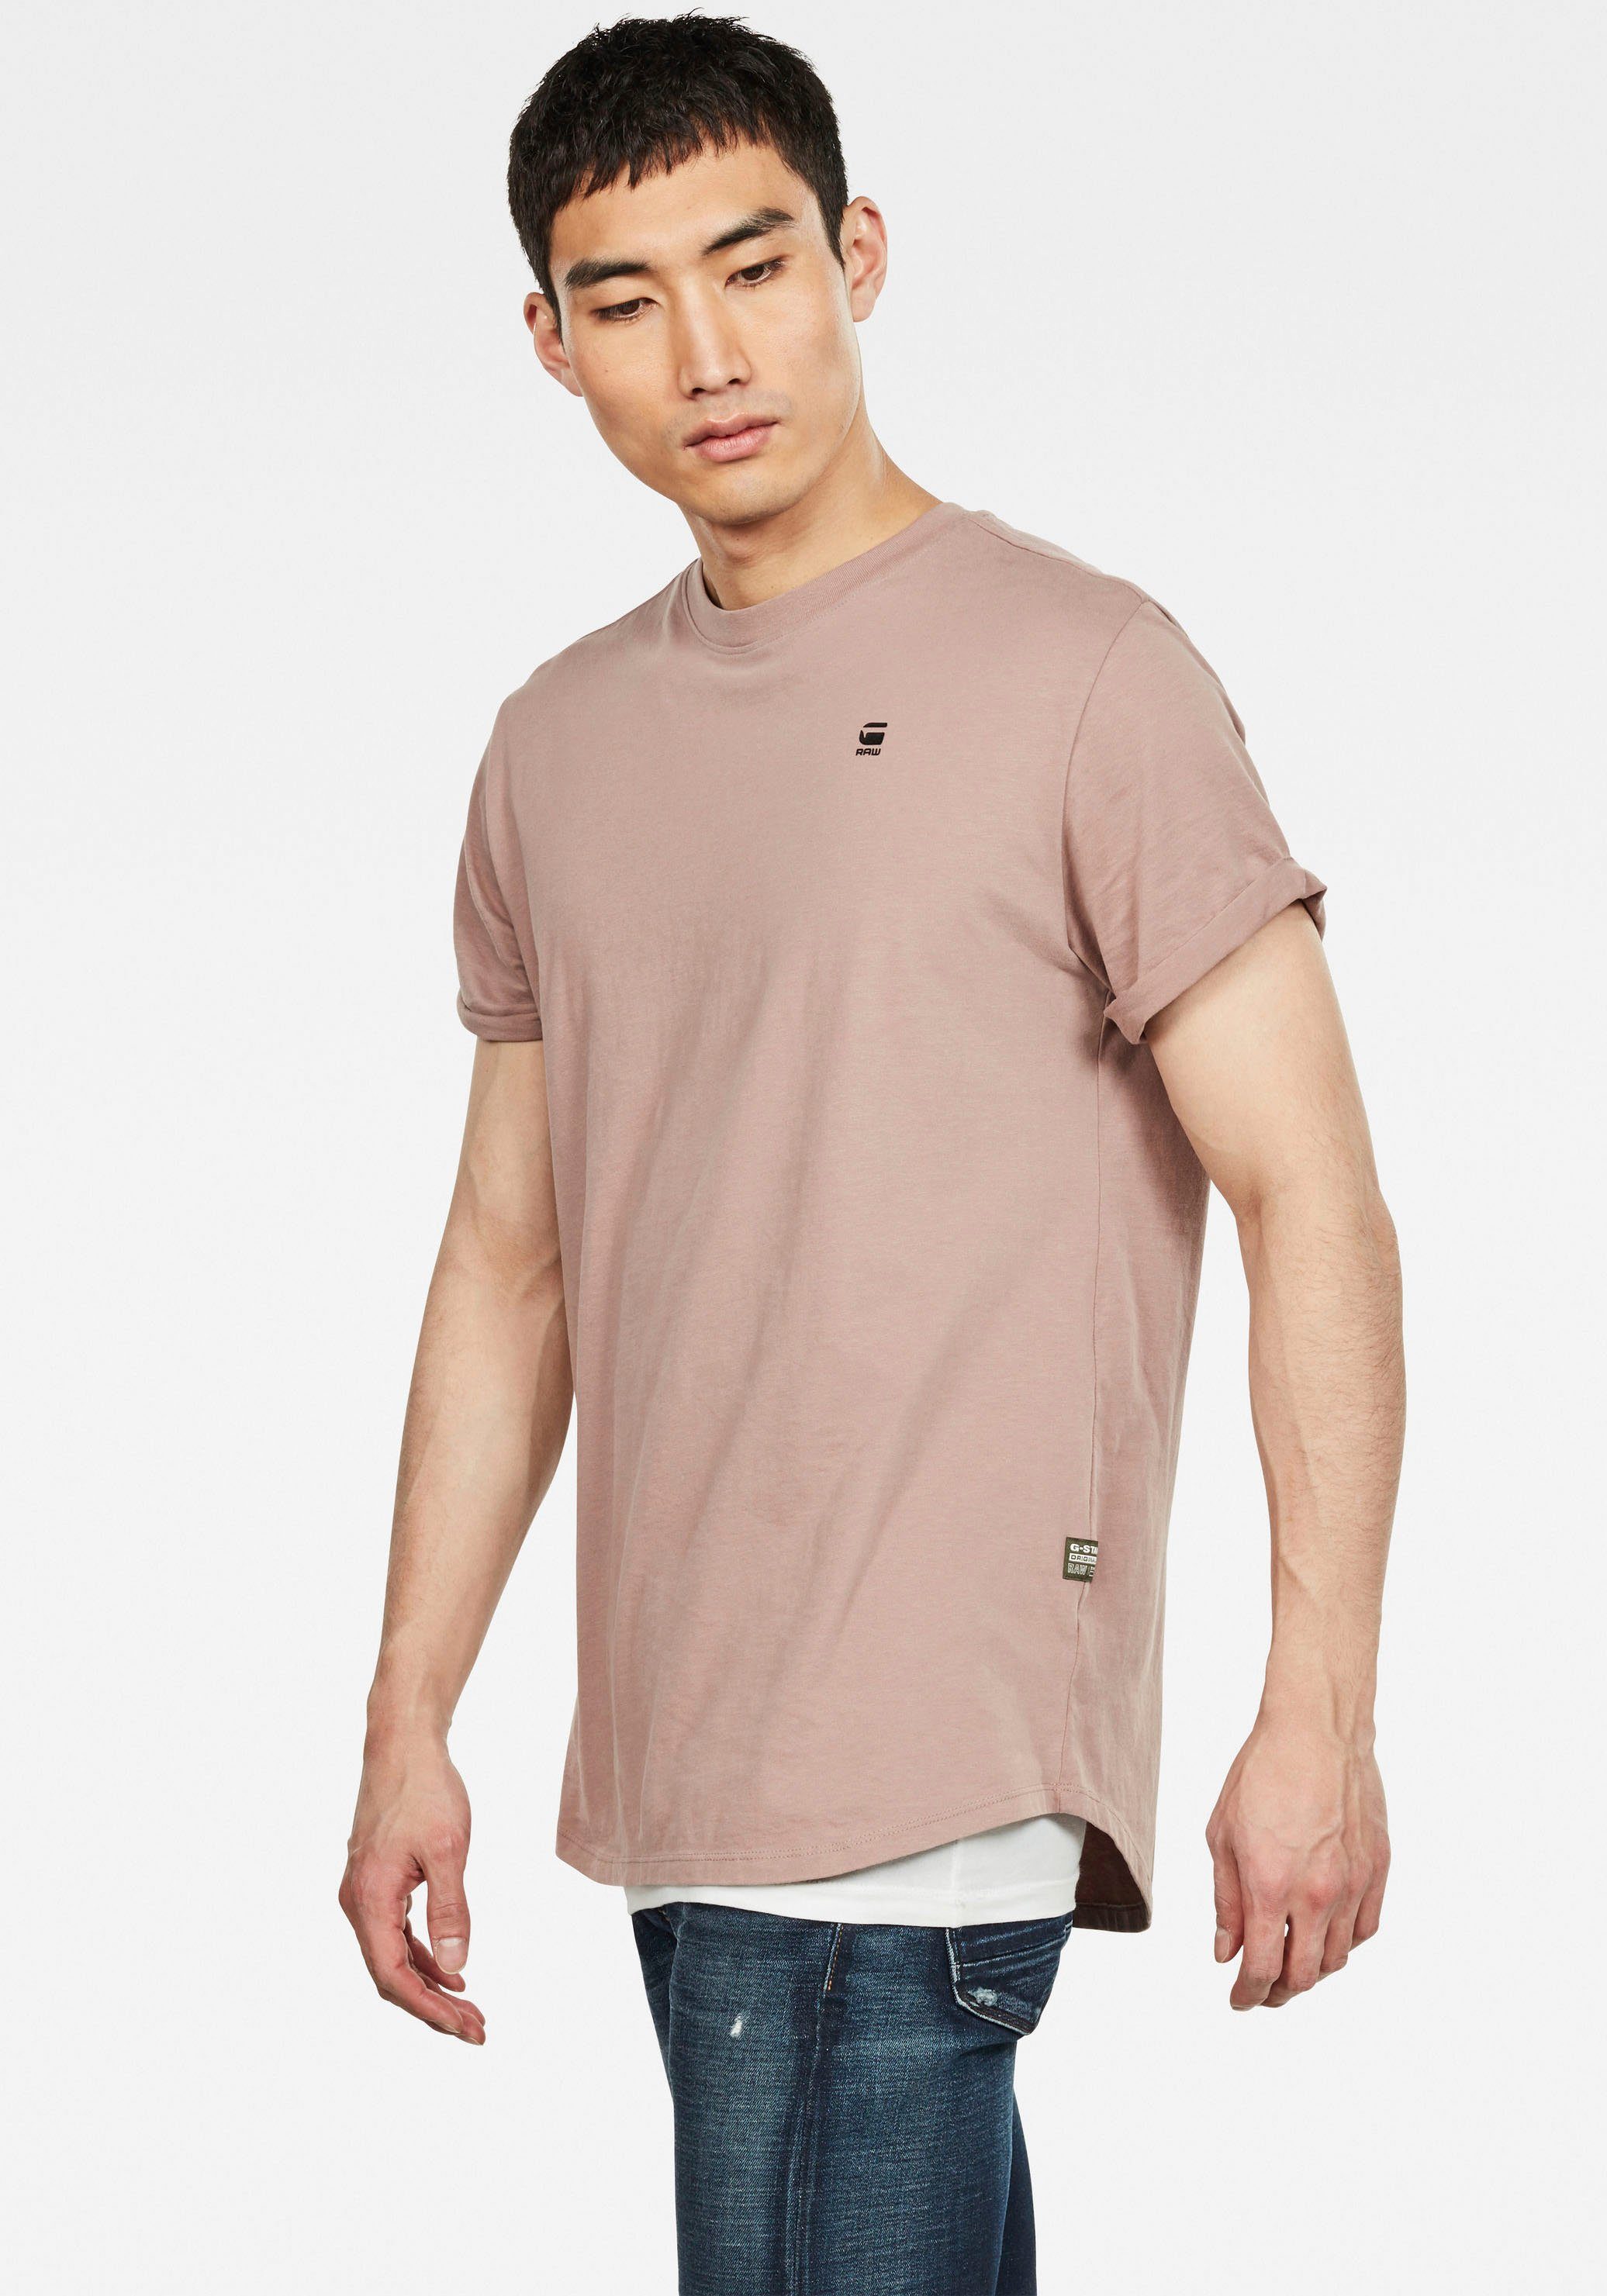 G-Star RAW T-Shirt Lash mit kleinem berry Logo chocolate Stitching